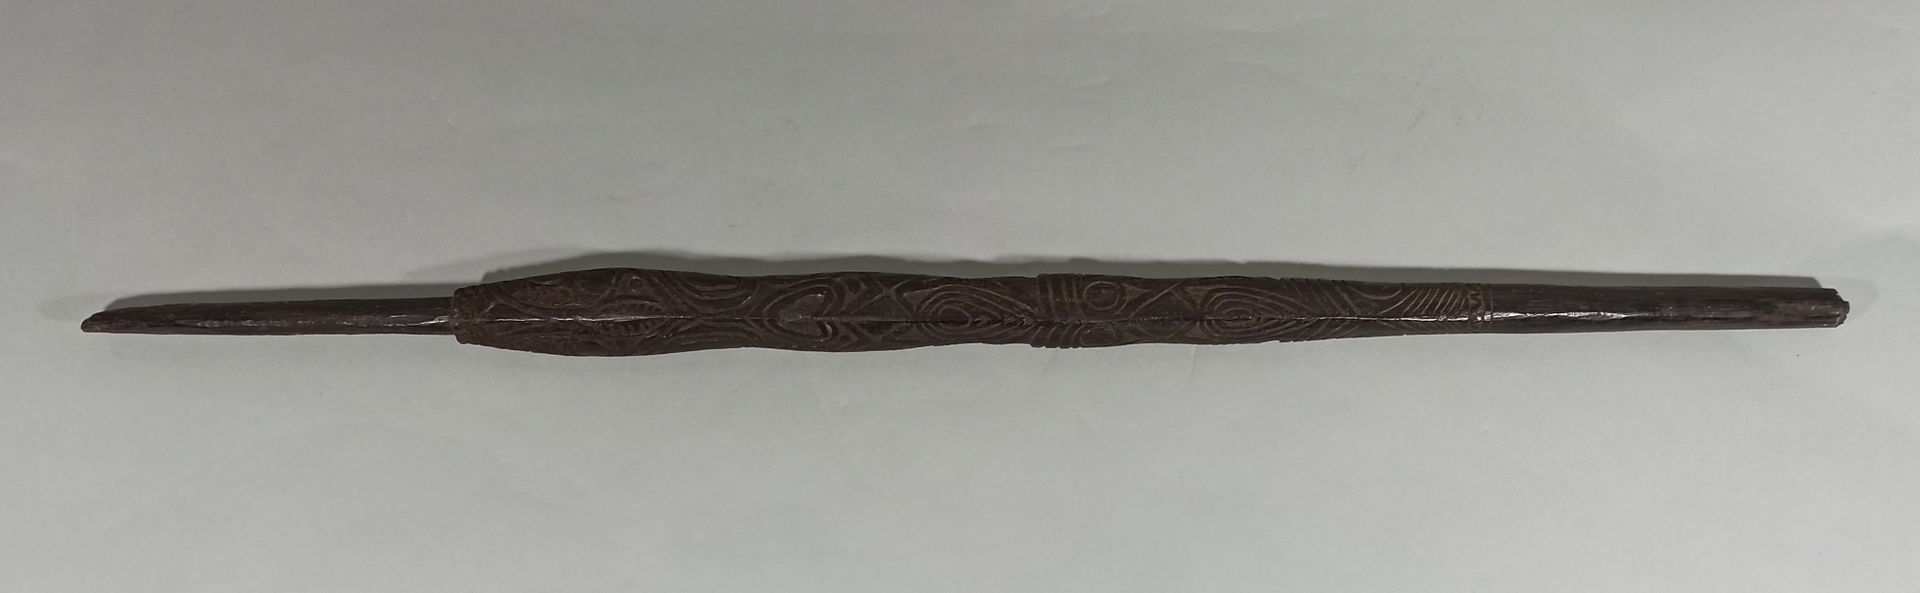 Null 巴布亚新几内亚棒，塞皮克地区，20世纪初。

漂亮的老式深褐色铜锈

磨损和撕裂

长度：113厘米